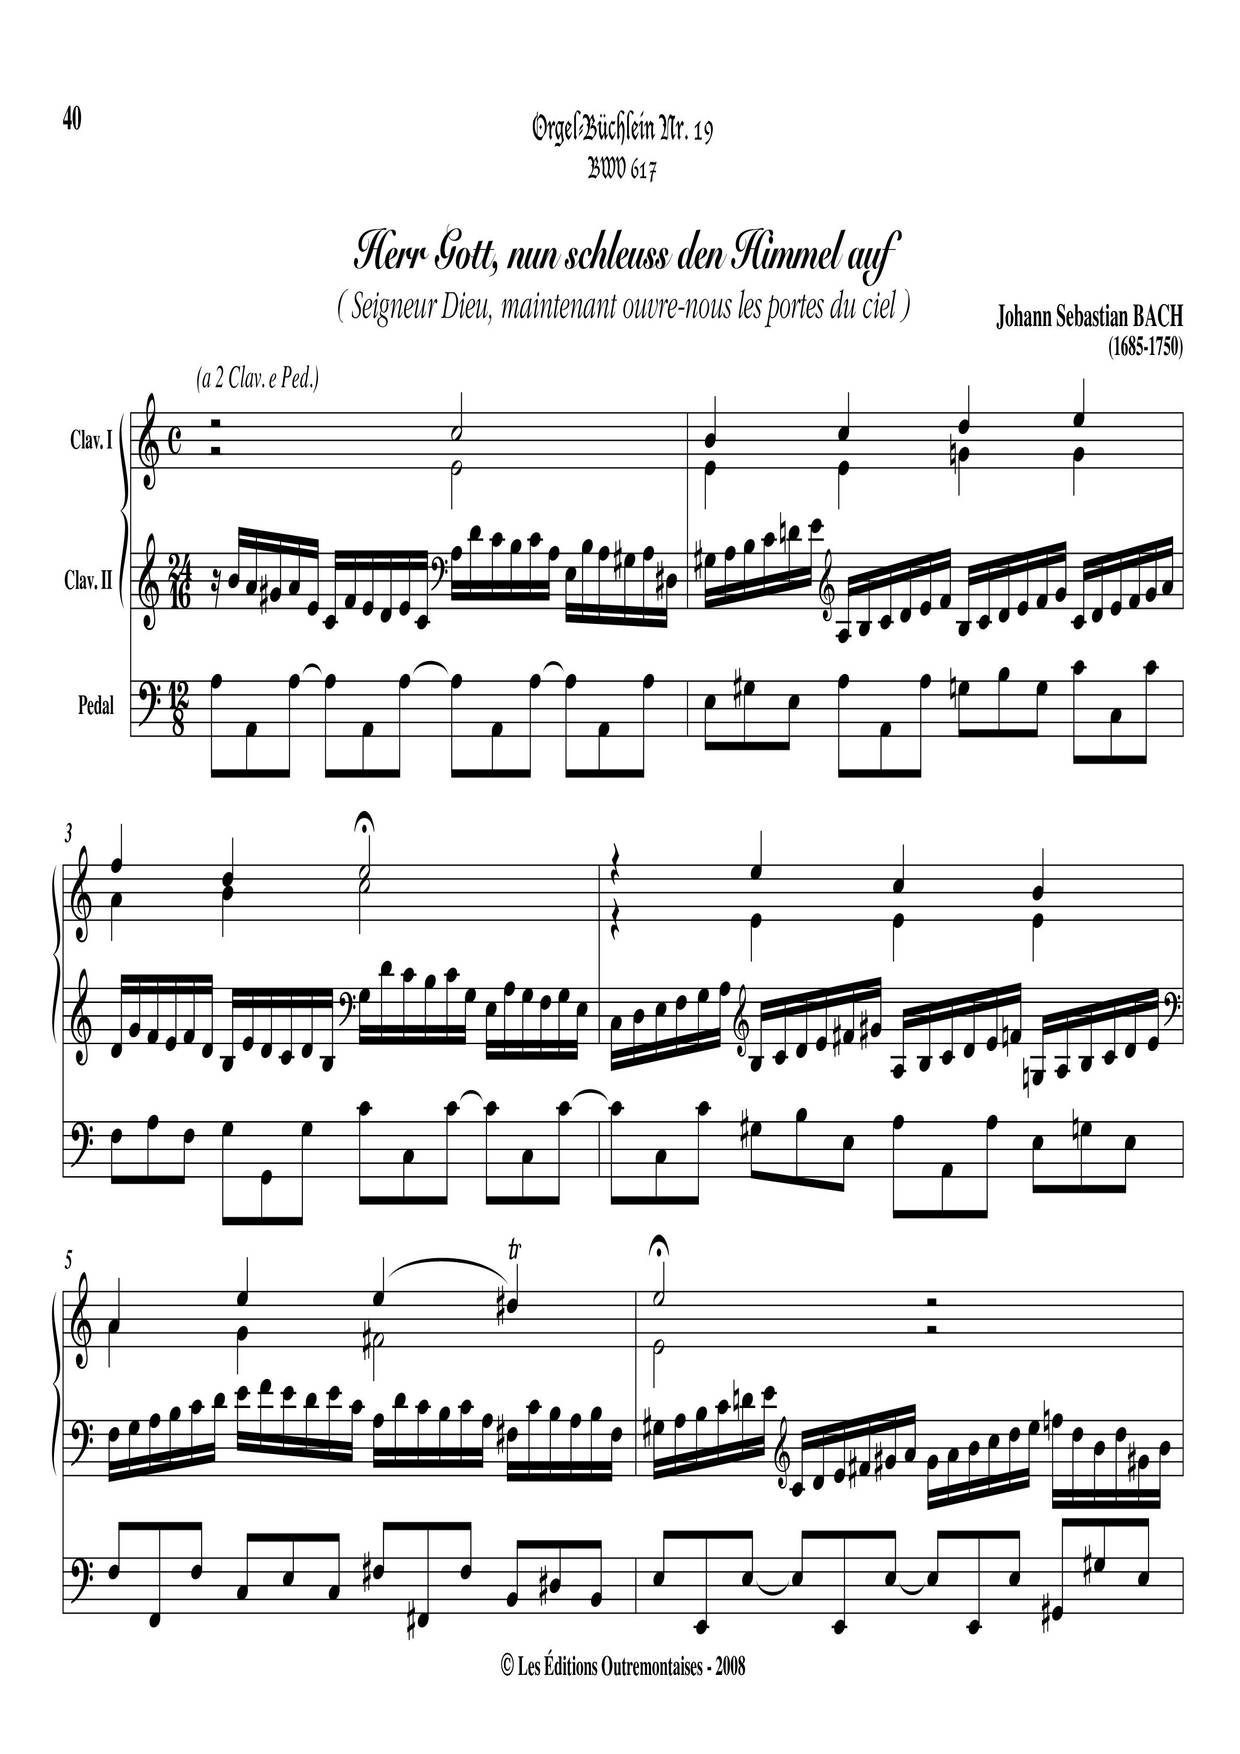 Chorale Prelude 'Herr Gott Nun Schleuss Den Himmel Auf', BWV 617ピアノ譜